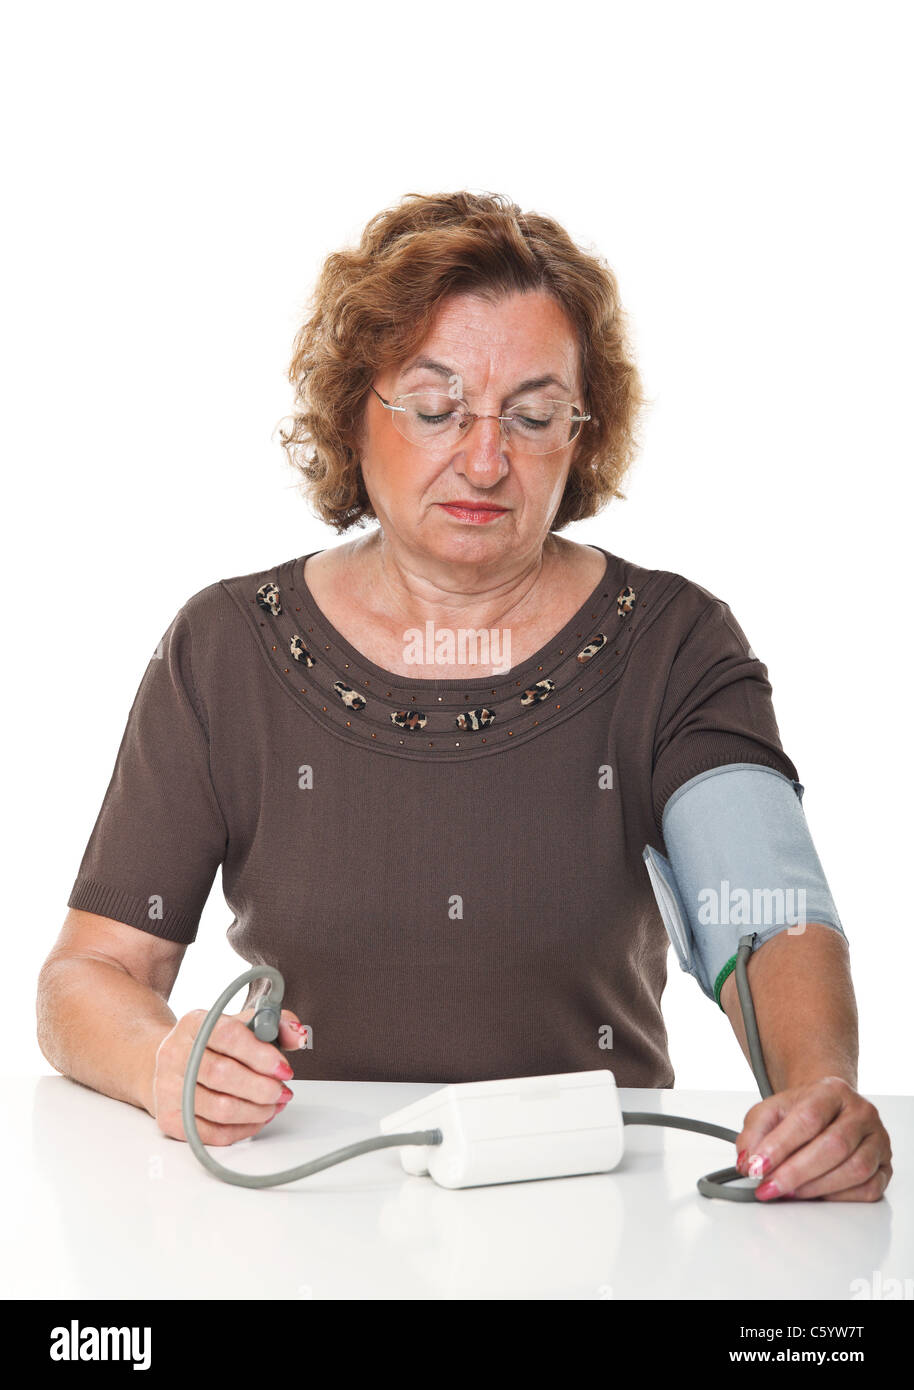 ältere Frau überprüfen Sie ihre Blodd Druck mit Maschine Stockfoto